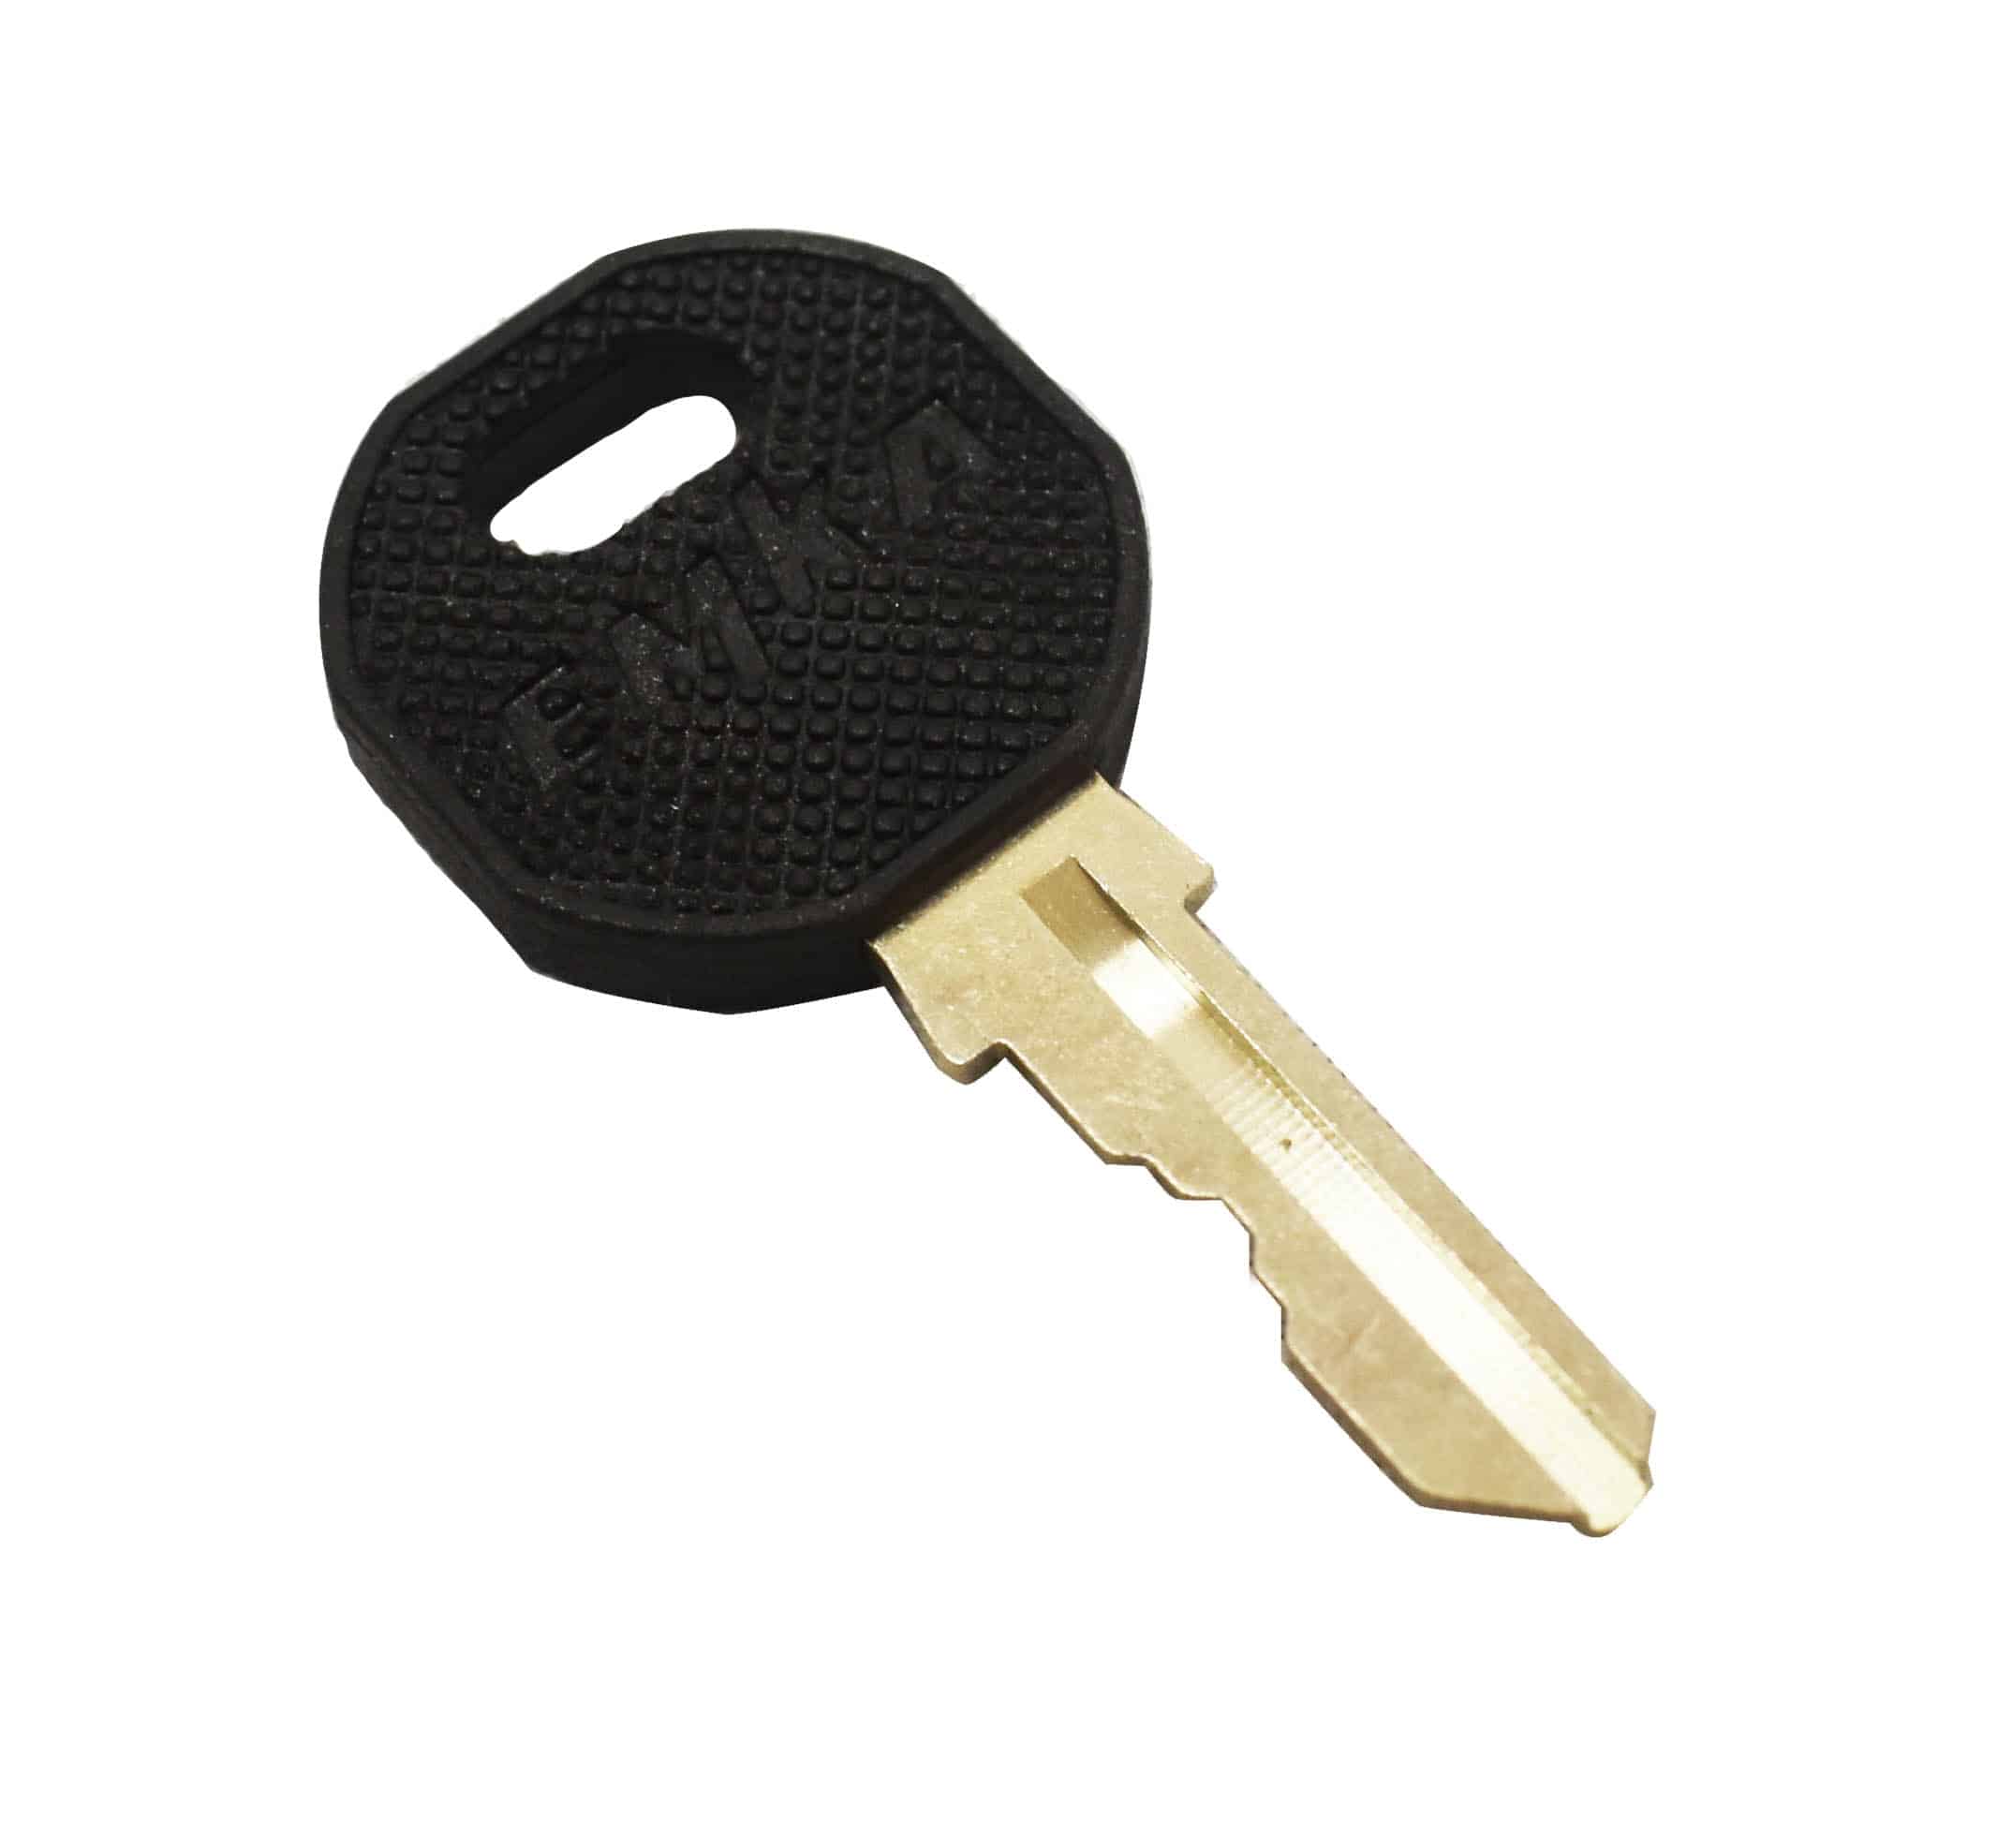 Replacement lock + 2 keys